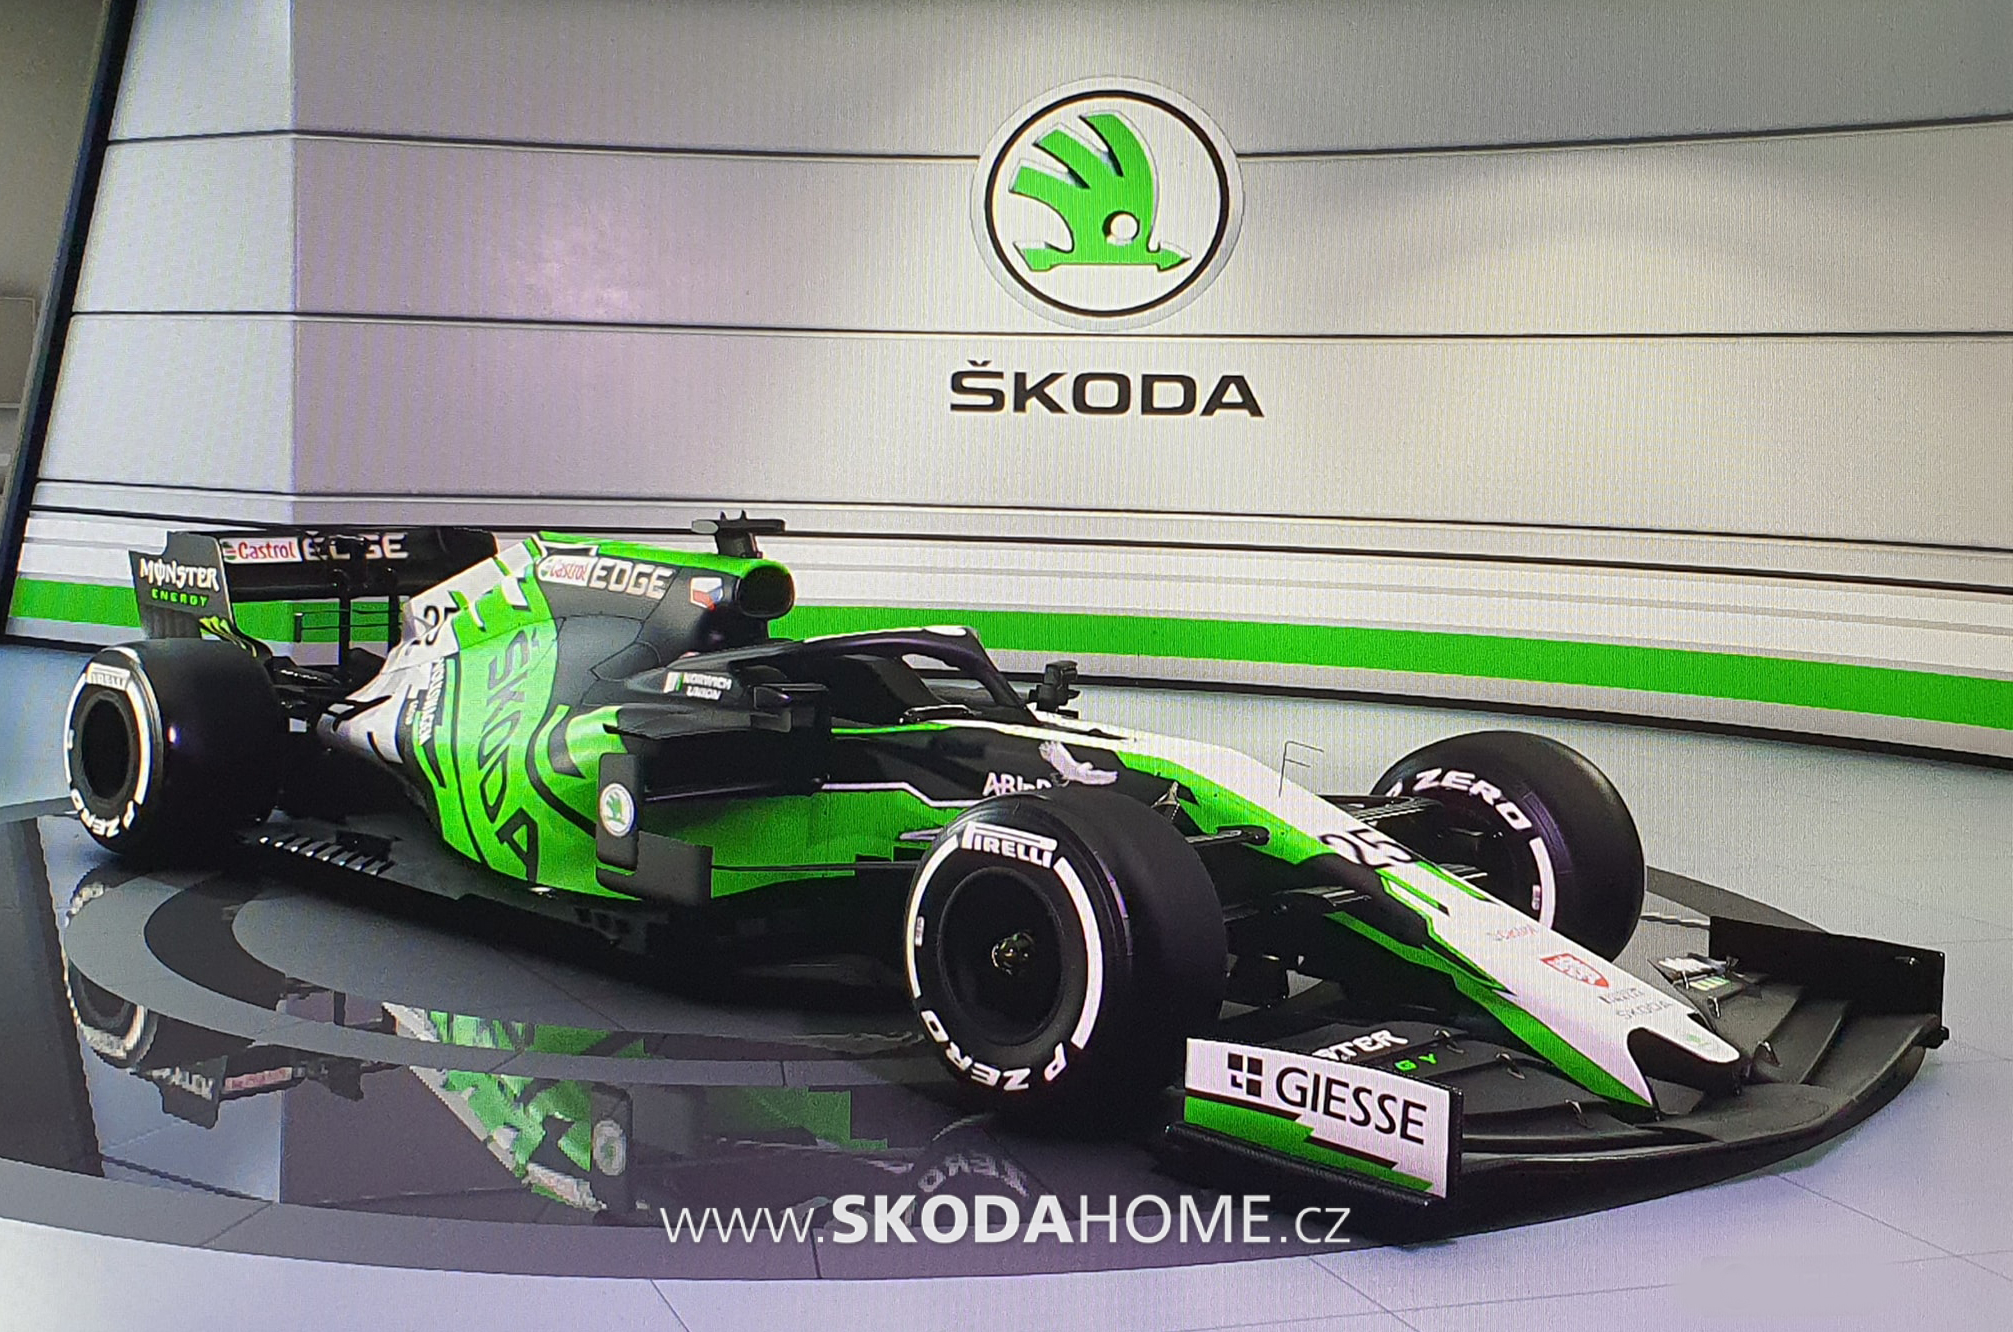 ŠKODA F1 1,6 V6 - 2021 | SKODAHOME.cz